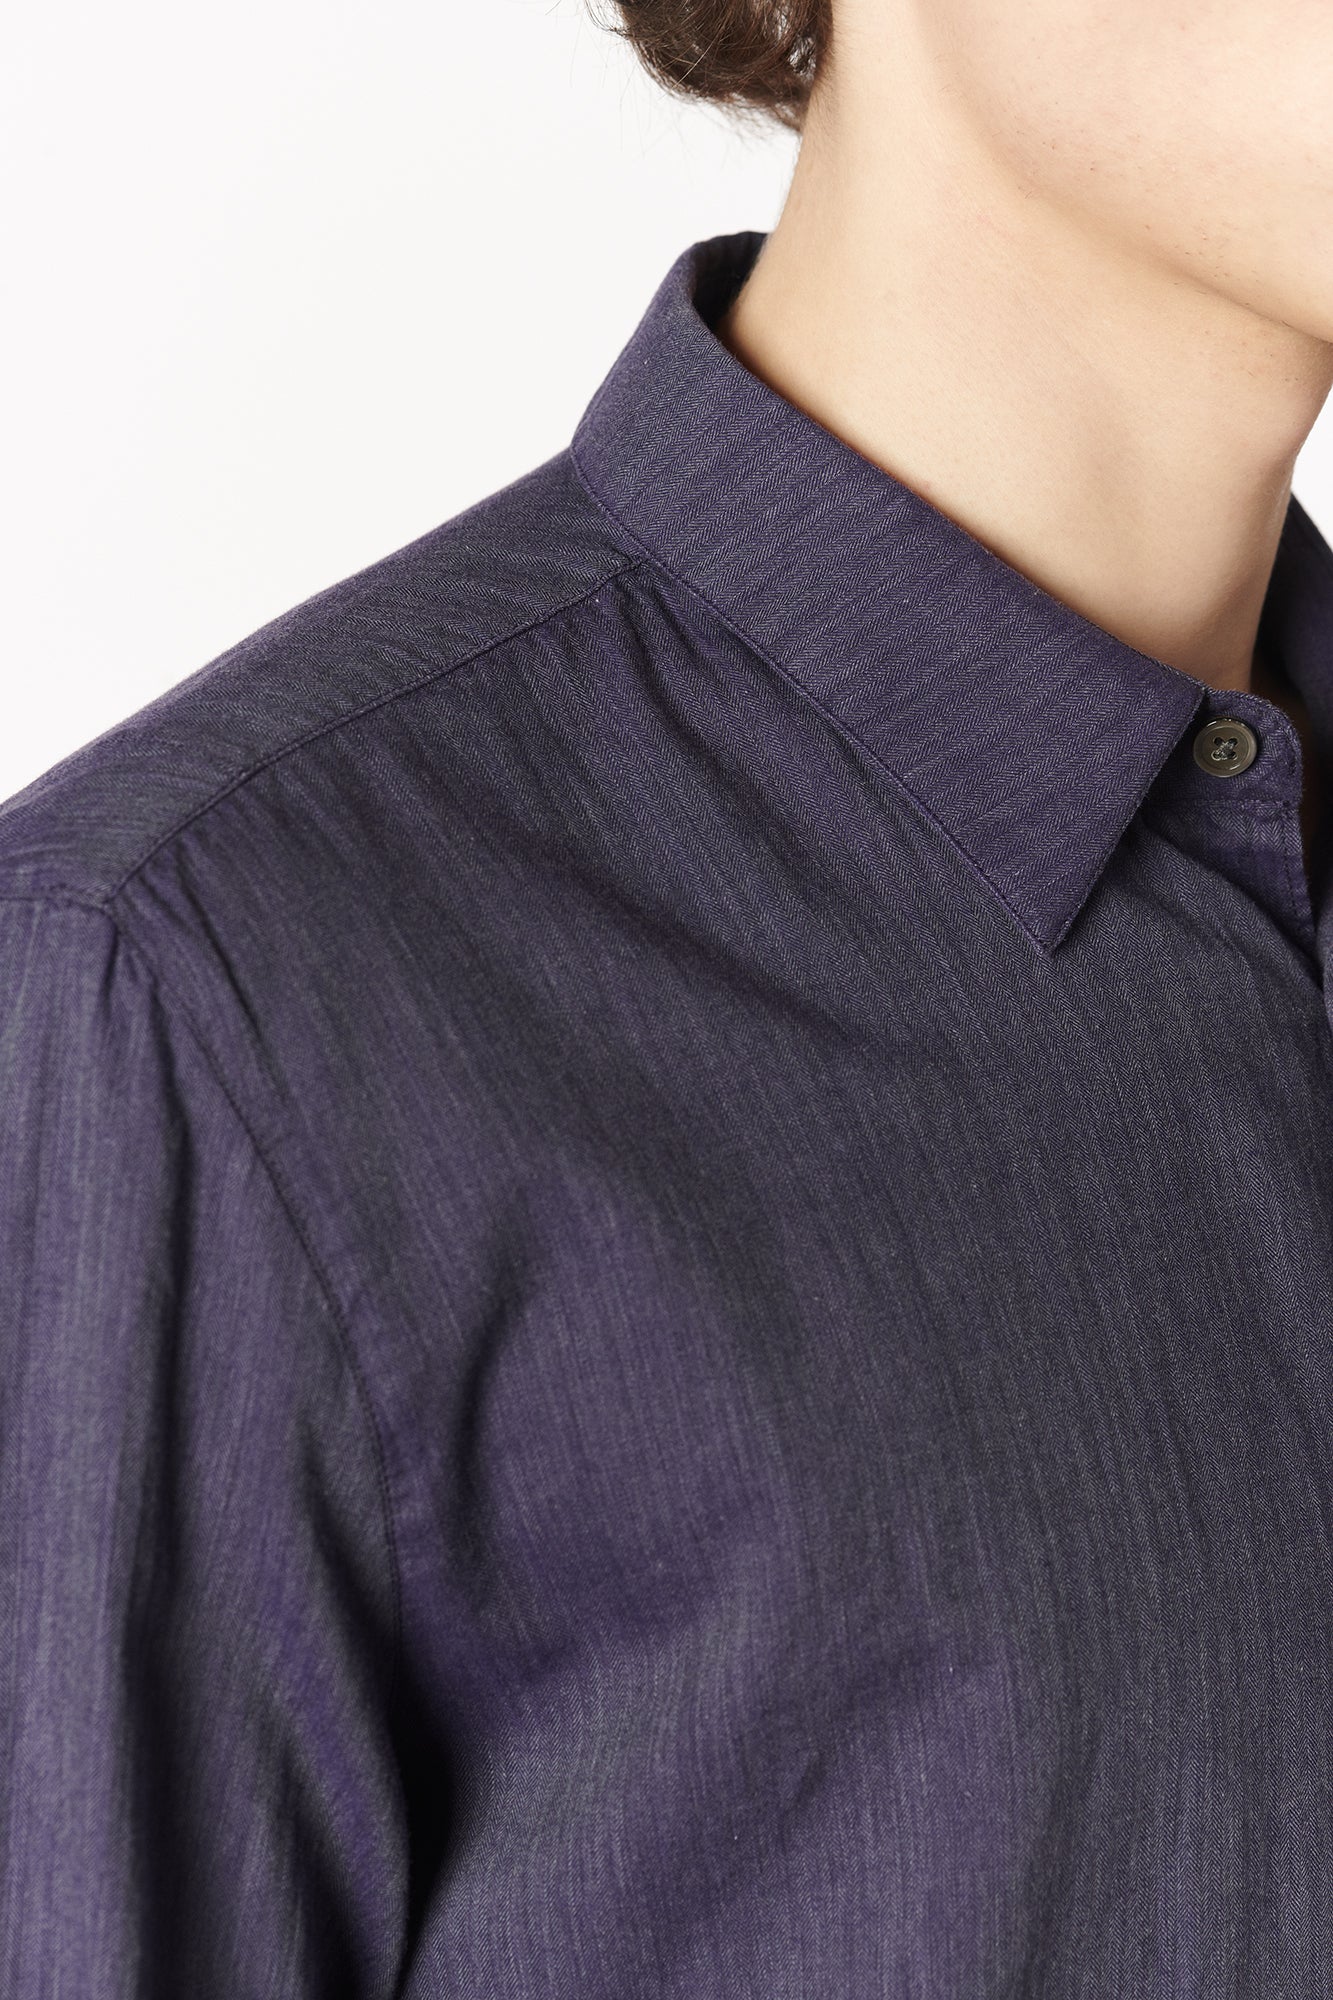 Feel Good Shirt in the Finest Purple Black Fine Herringbone Soft